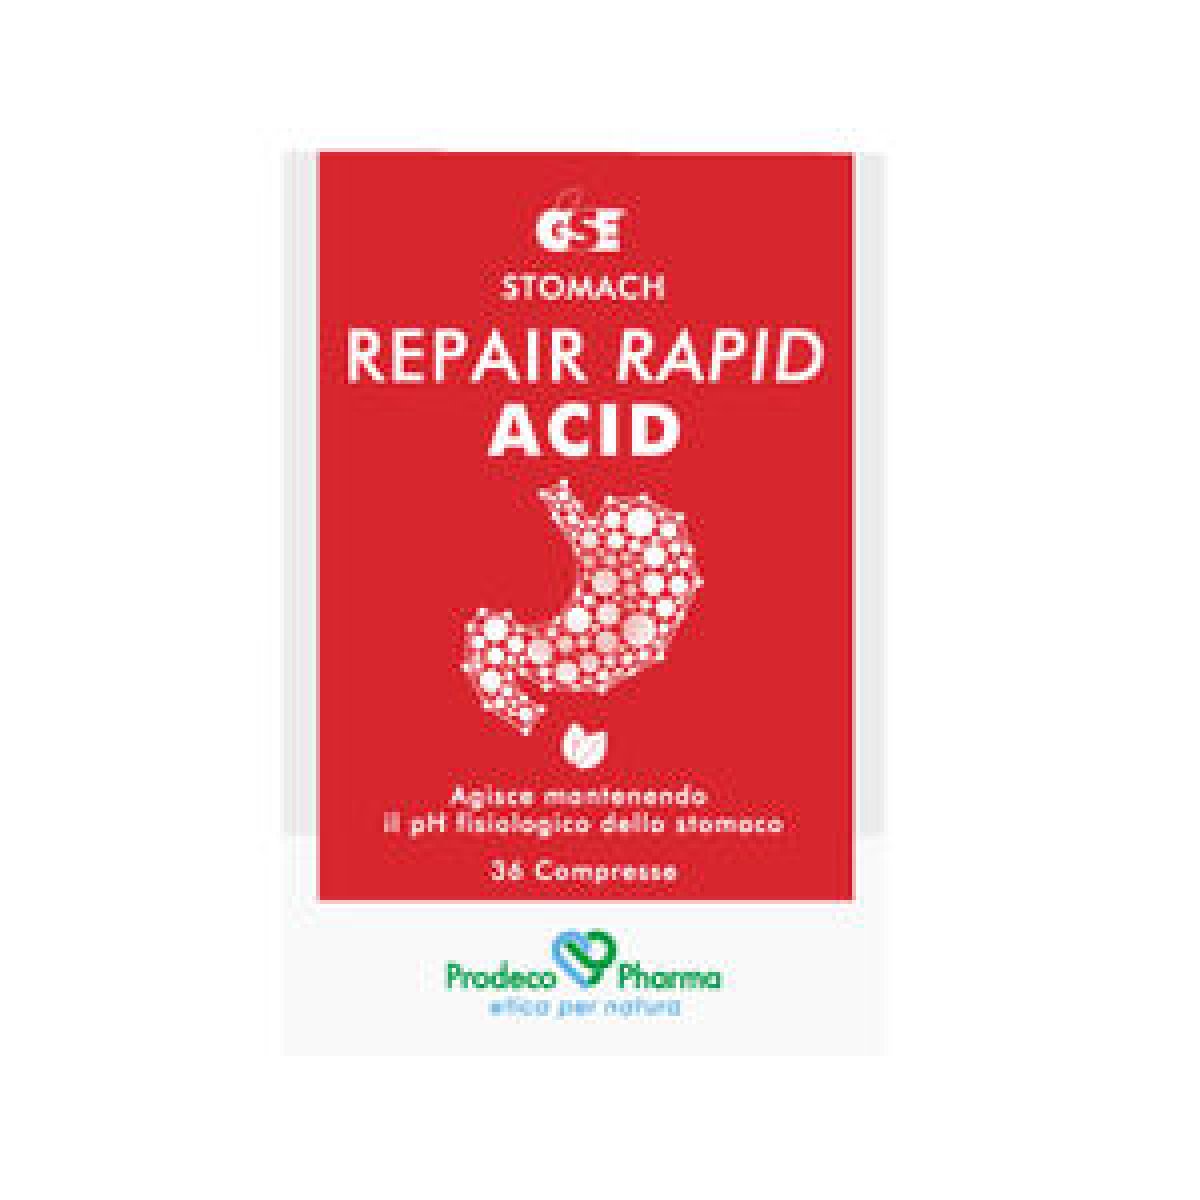 GSE Repair Acid Rapid 36 cpr - Prodeco Pharma Prodotto ad azione filmogena protettiva indicato in caso di iperacidità, bruciore gastrico e reflusso. 36 compresse deglutibili in blister.